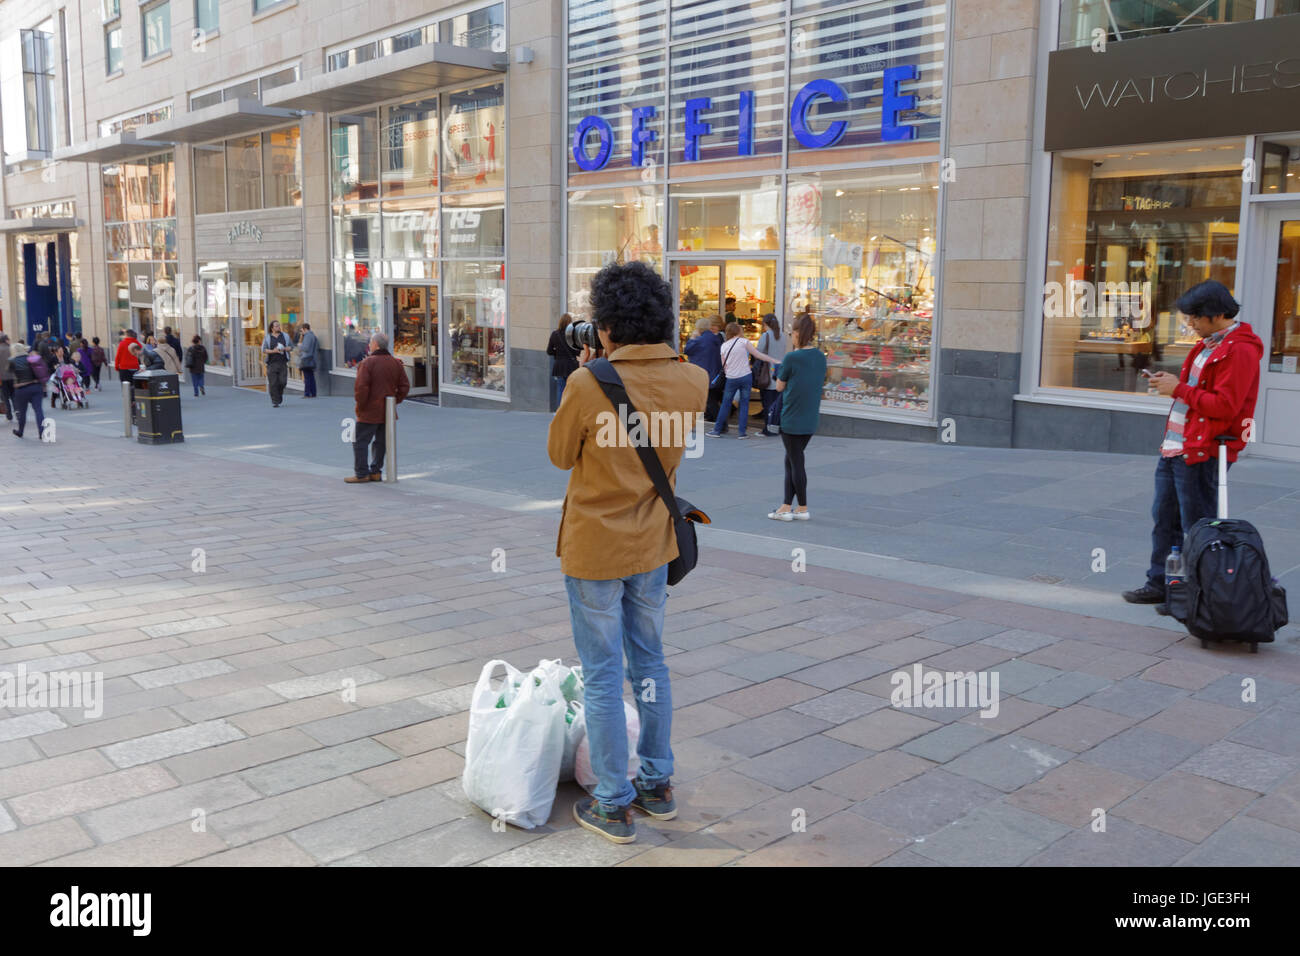 Jeune homme à la mode adolescent étudiant à prendre des photos avec l'appareil photo de la rue de Glasgow Buchanan Street photographe amateur de shopping with shopping bags Banque D'Images